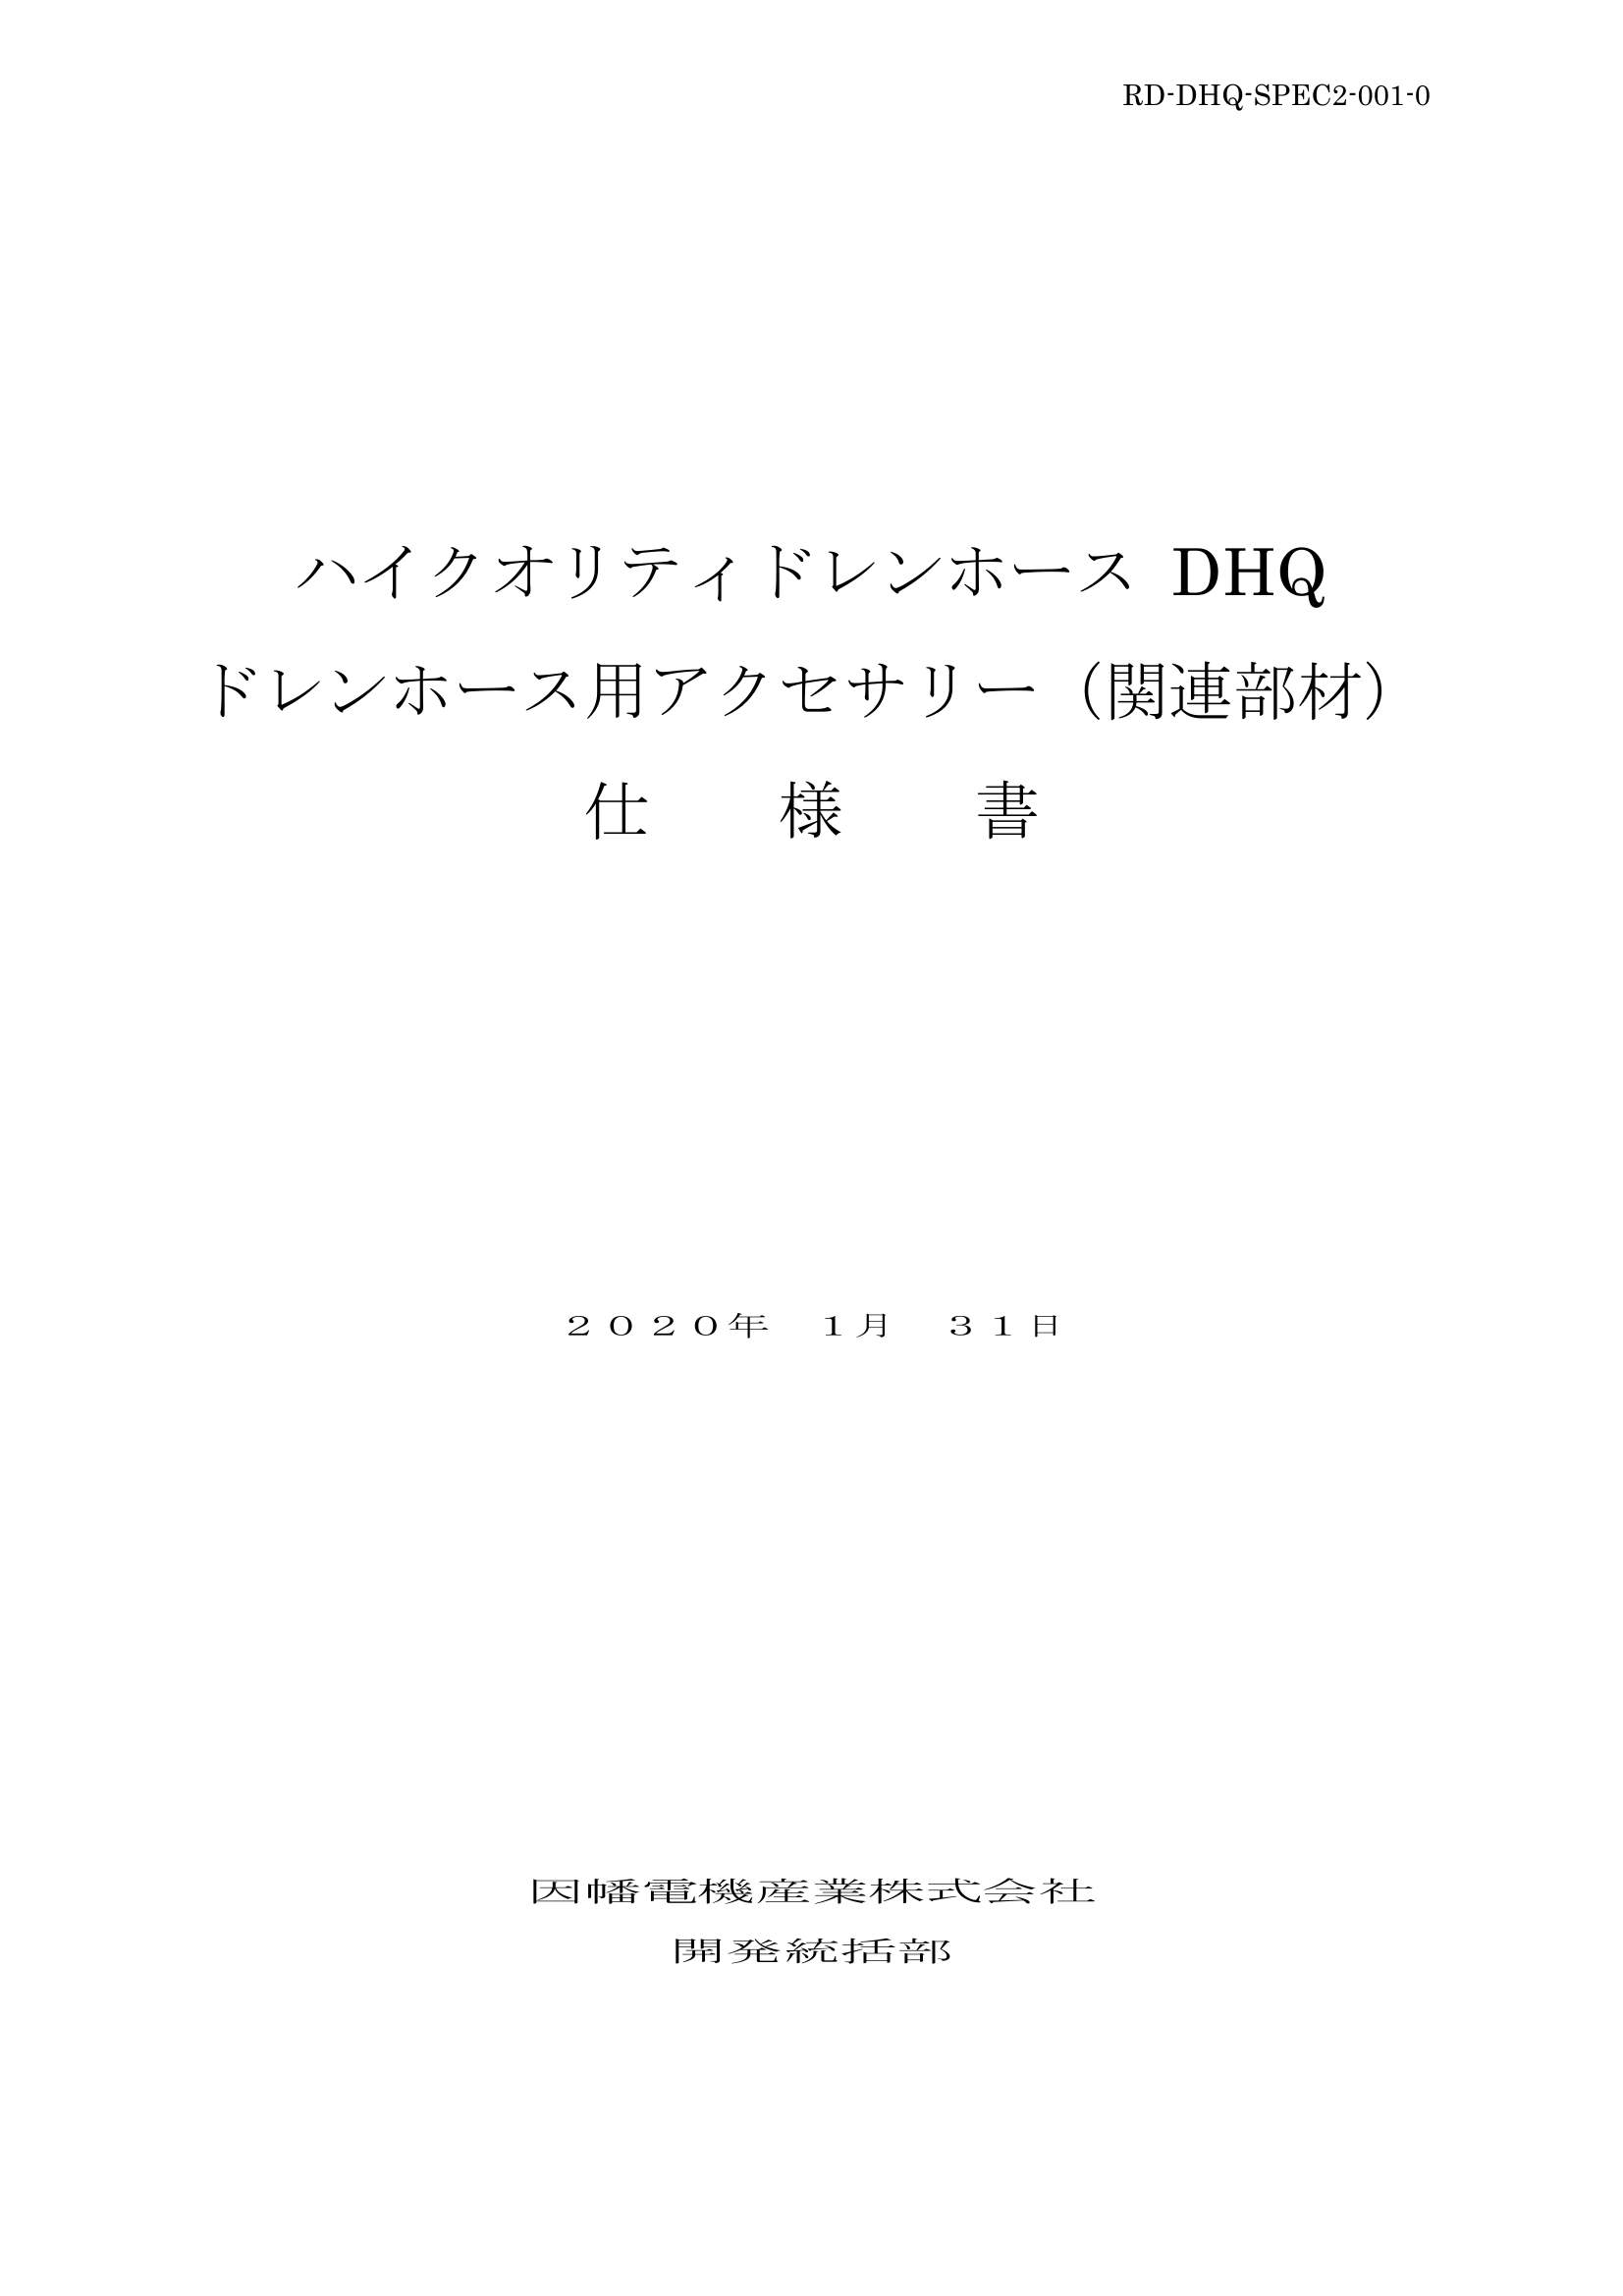 DHQ_仕様書_20200131.pdf